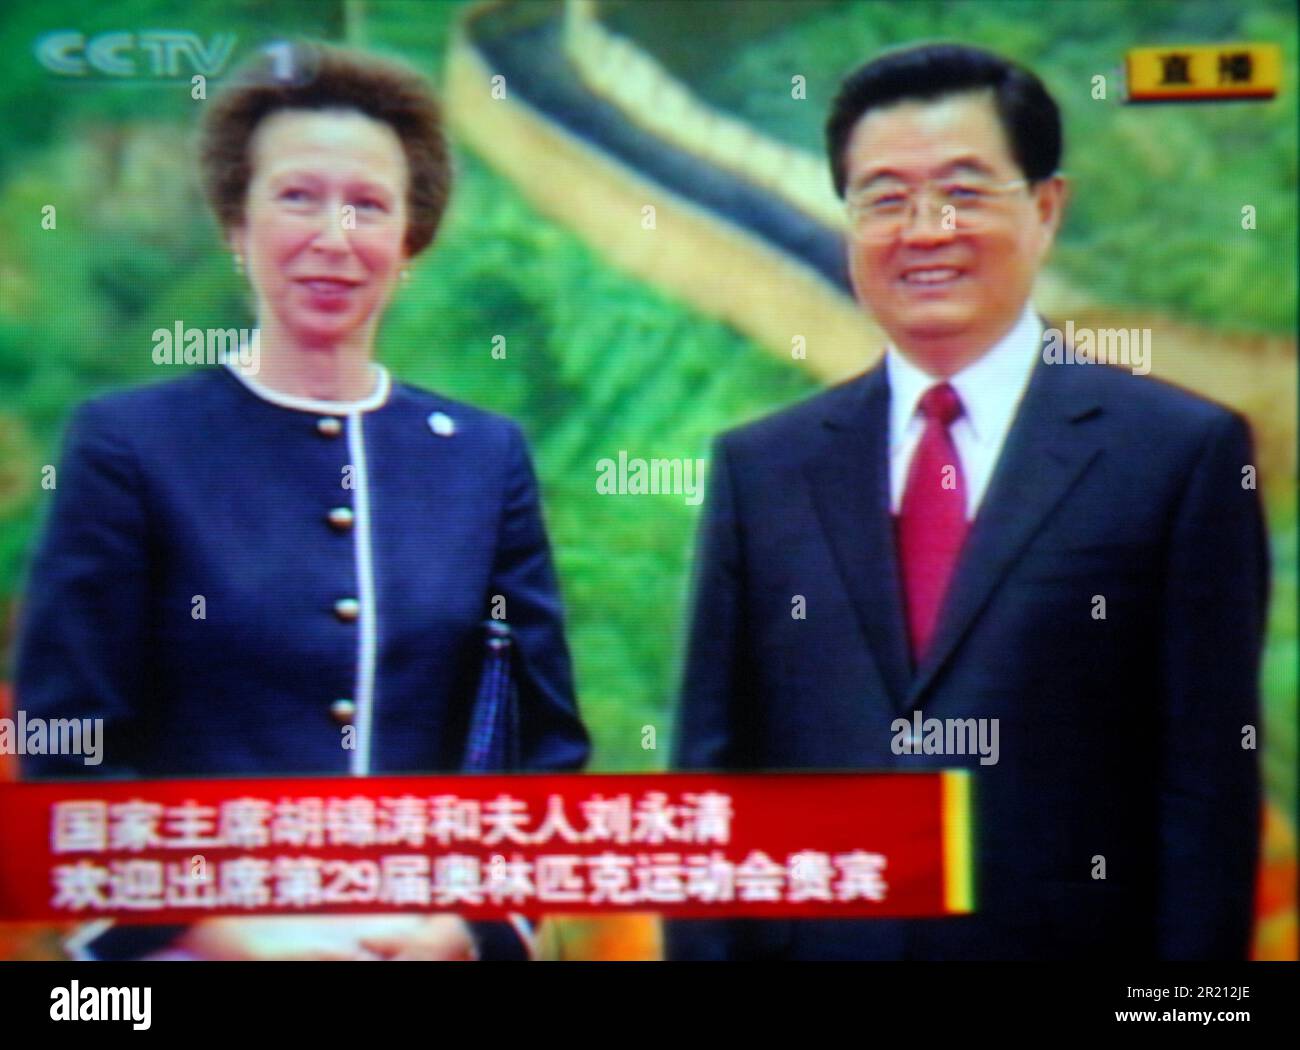 Foto von Prinzessin Anne und Präsident Hu Jintao, zusammen in Peking, China, am Tag der Eröffnungszeremonie der Olympischen Spiele von Peking auf CCTV-1, bei der Berichterstattung über den Besuch in Peking durch führende Politiker und Vertreter der Welt. Stockfoto